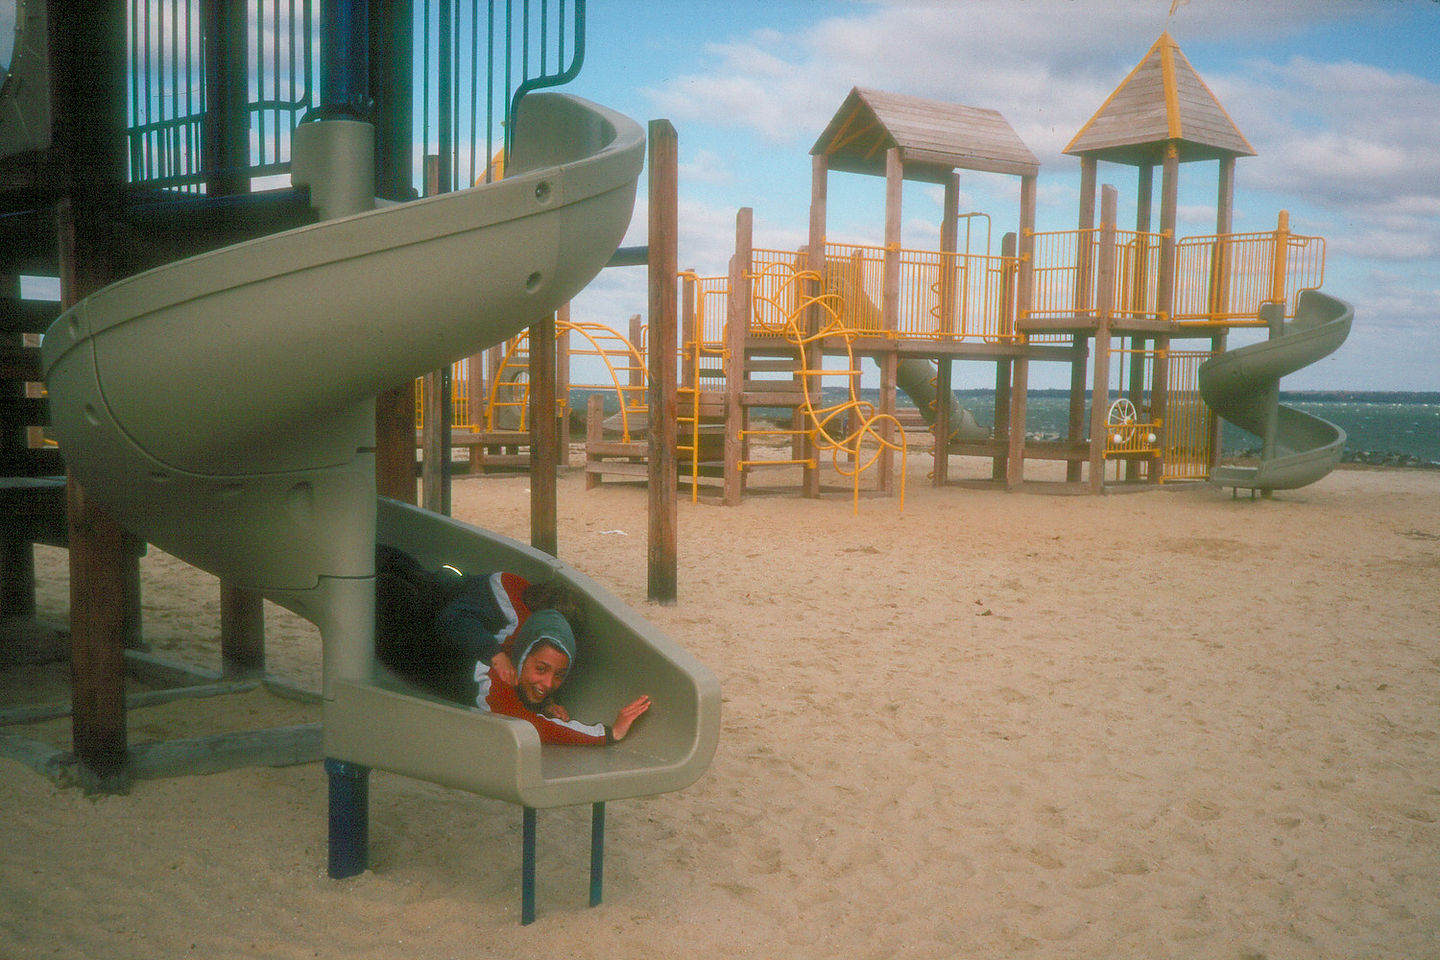 Boys on slide at rest stop